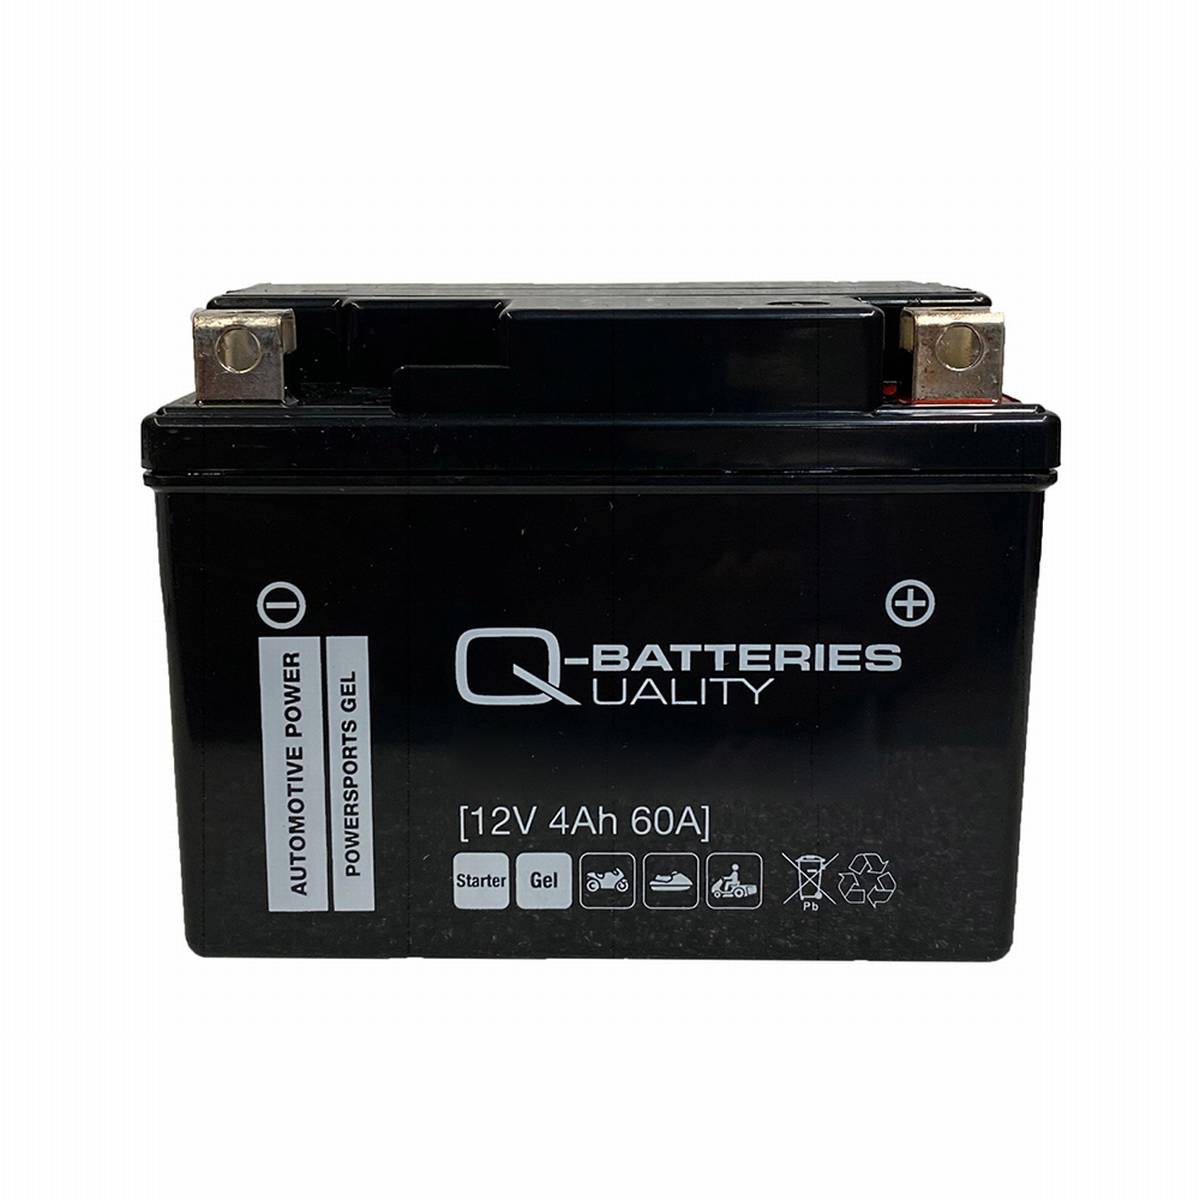 Q-Batteries Motorradbatterie 4L-BS Gel 50314 12V 4Ah 60A